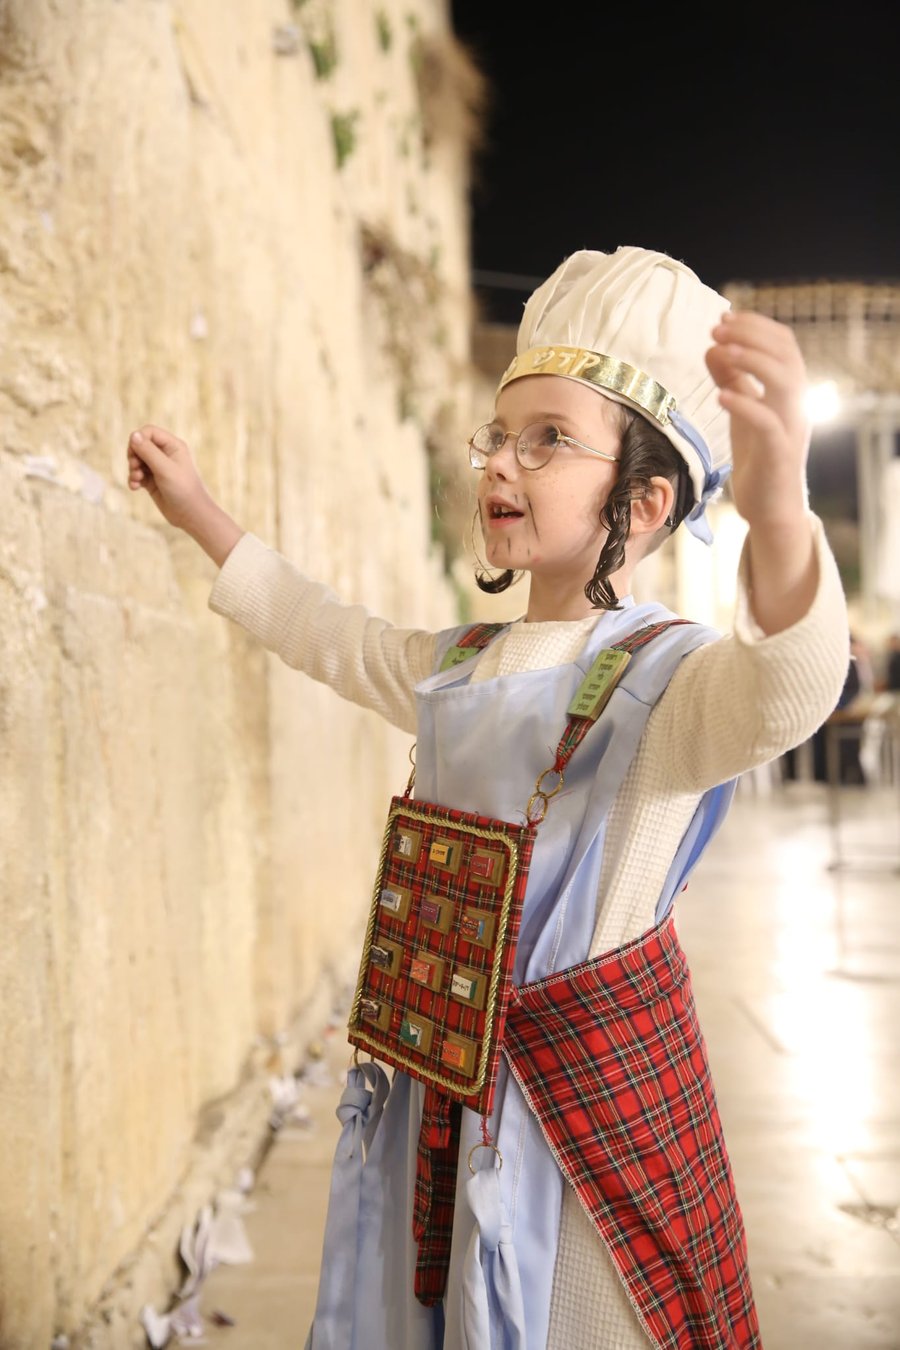 חג פורים בירושלים: קריאת מגילה ותחפושות בכותל המערבי